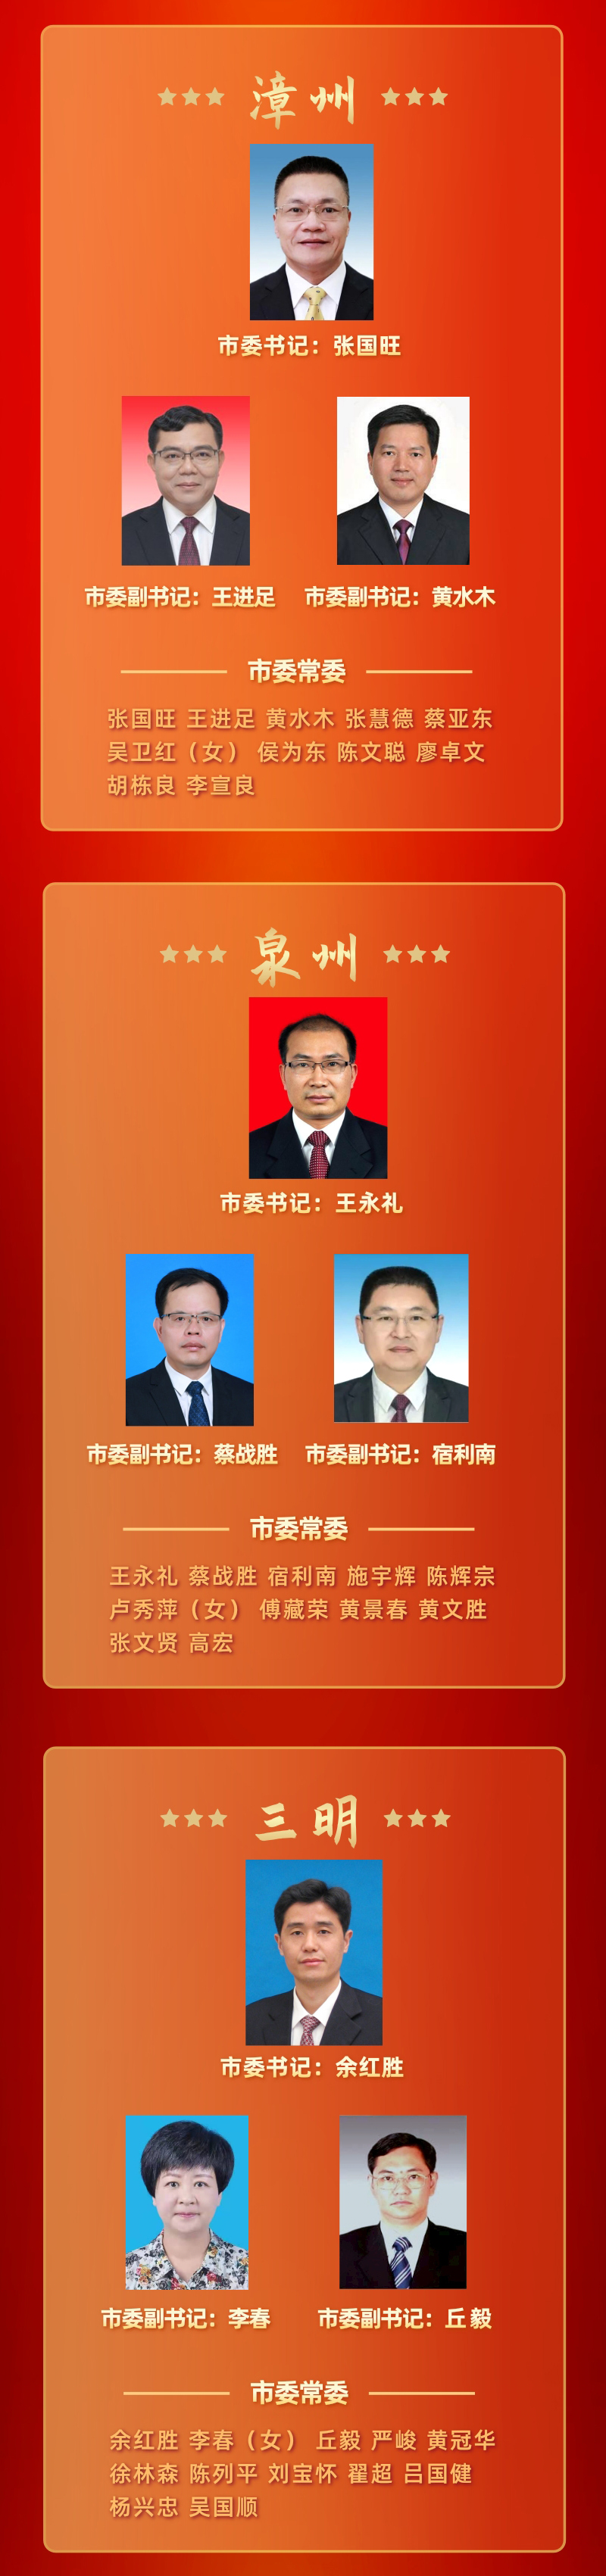 福建省领导班子图片